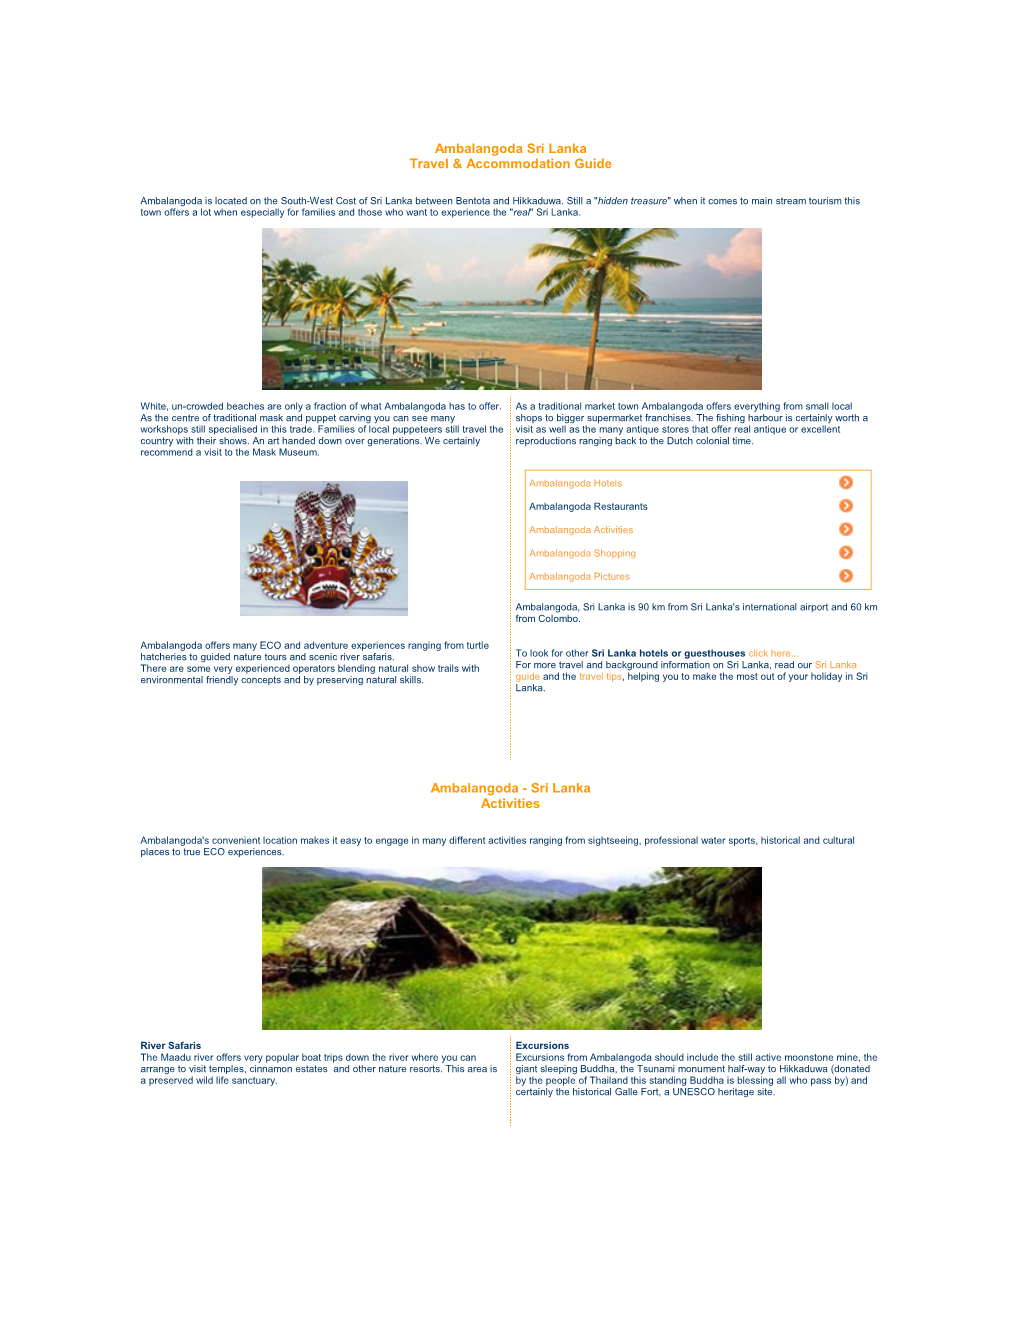 Ambalangoda Sri Lanka Travel & Accommodation Guide